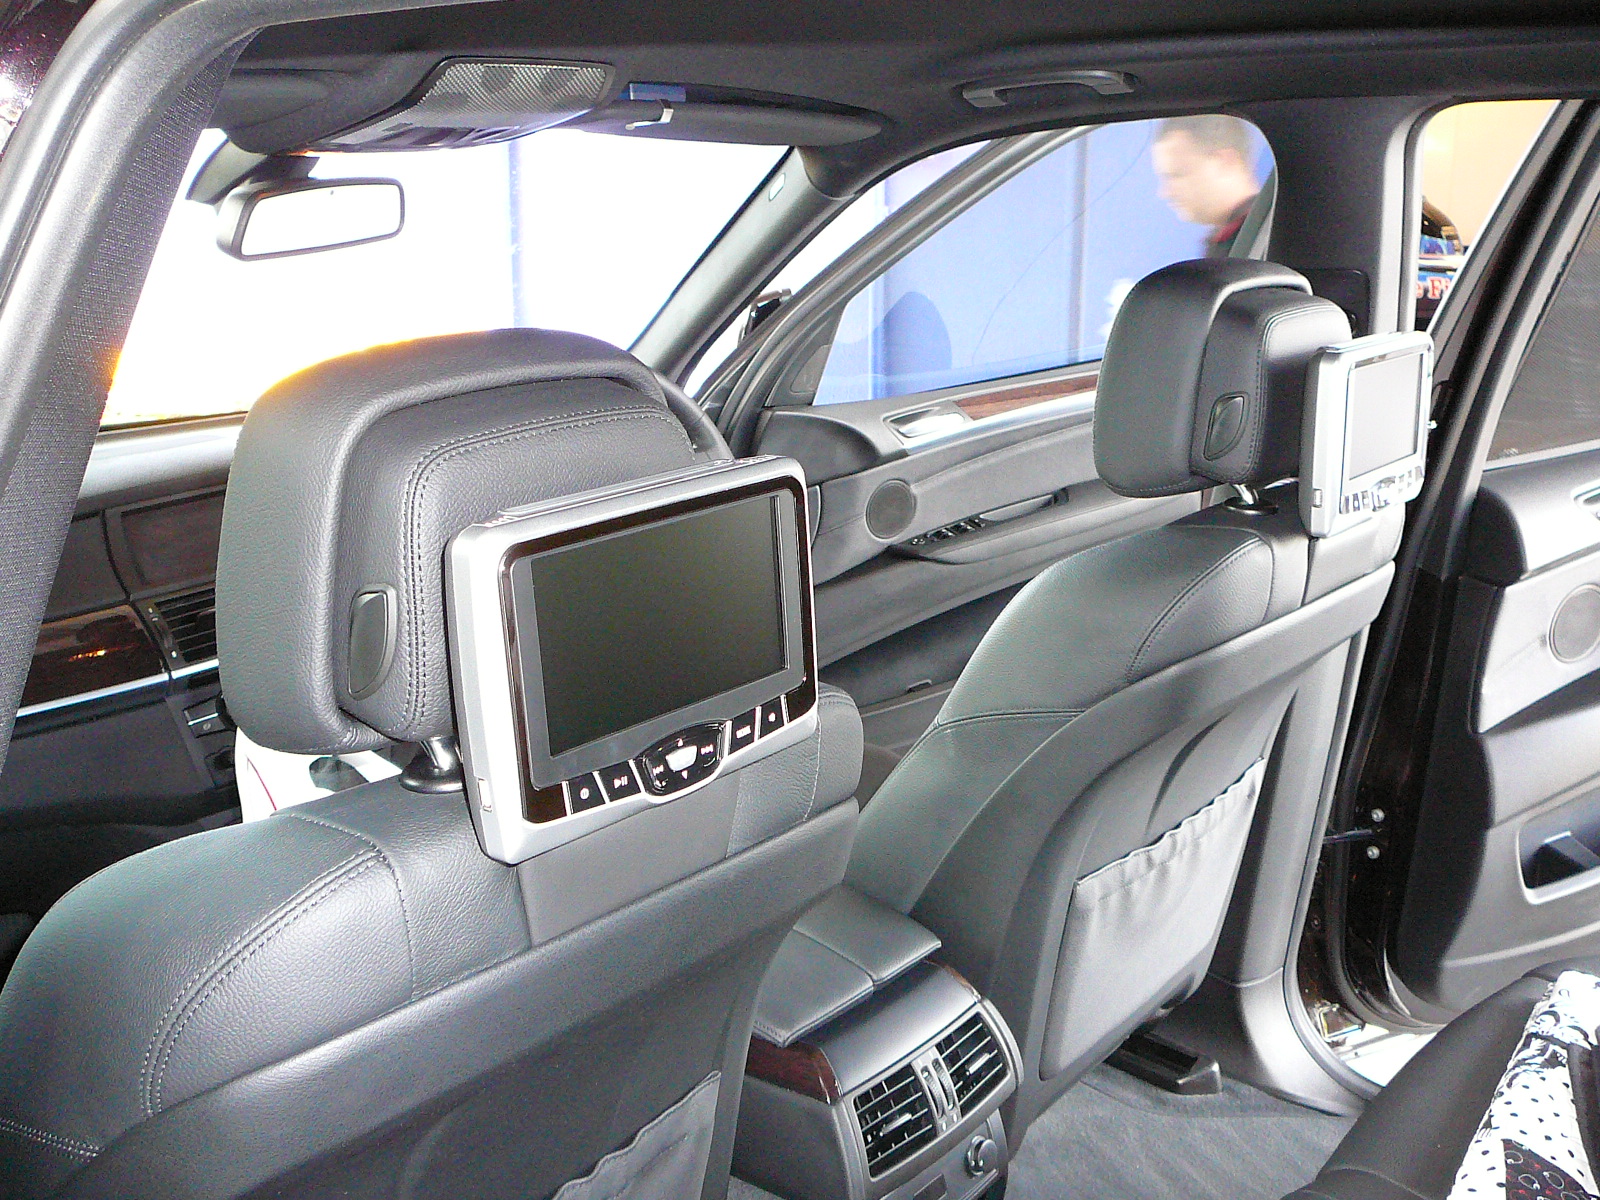 BMW X5 2011, DVD Head Rest Screens